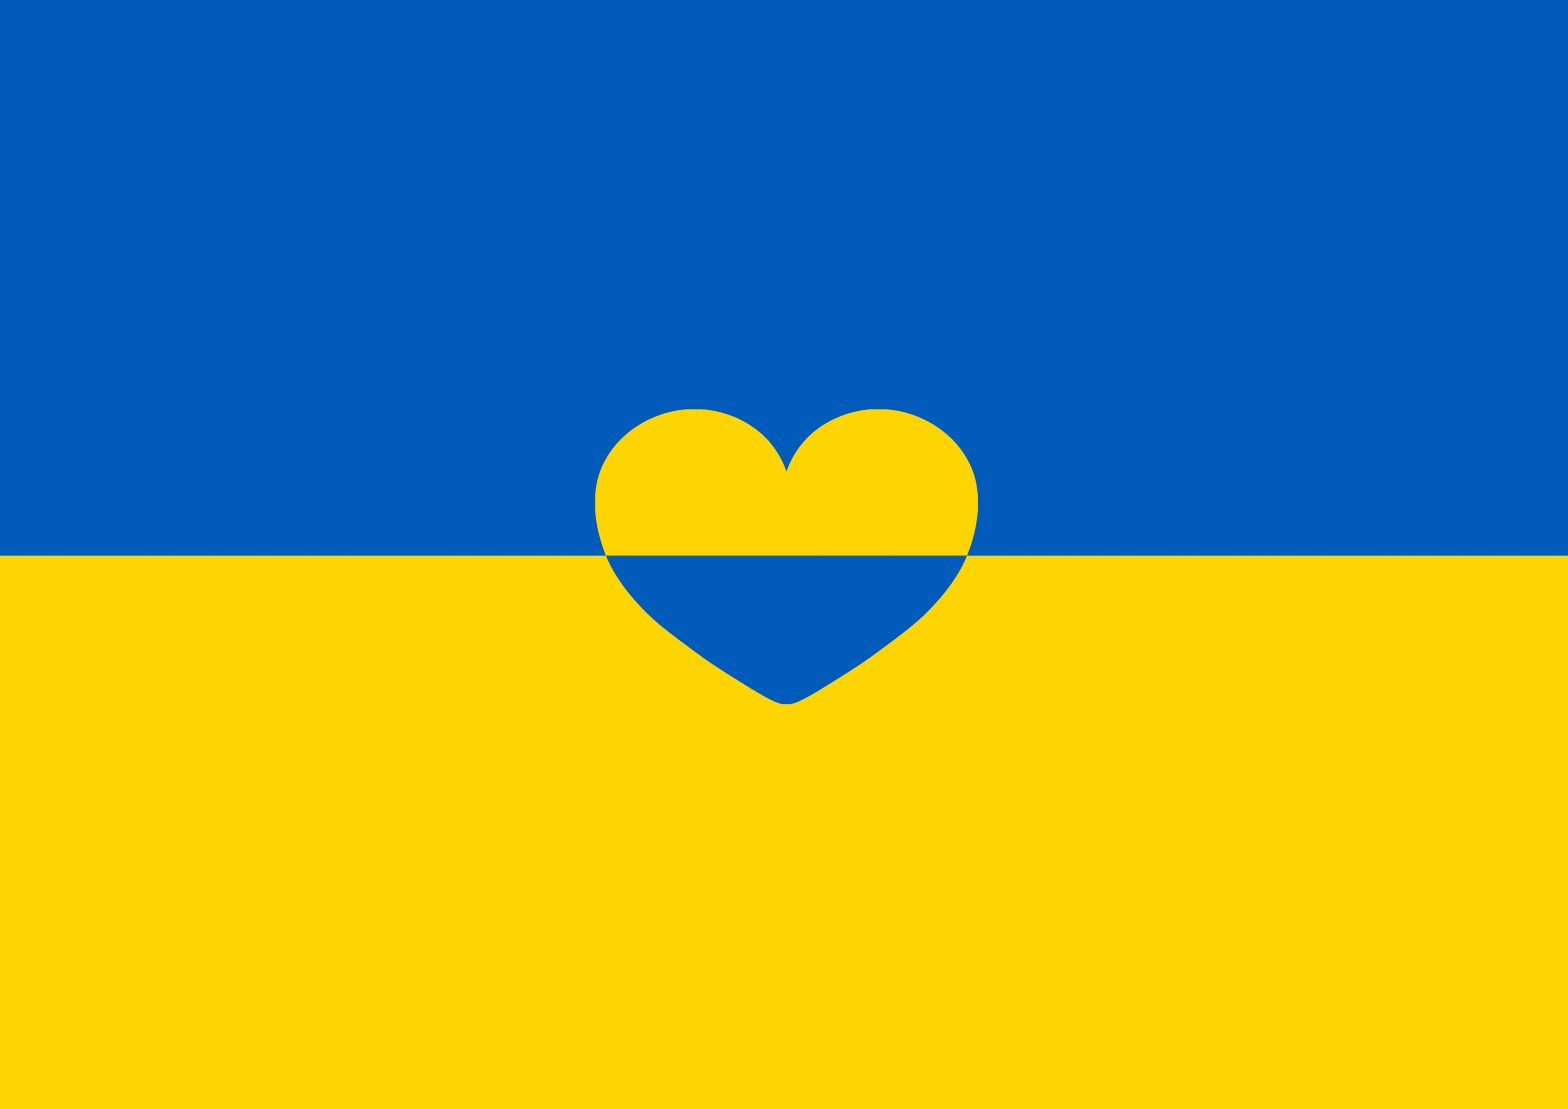 Uniting for Ukraine